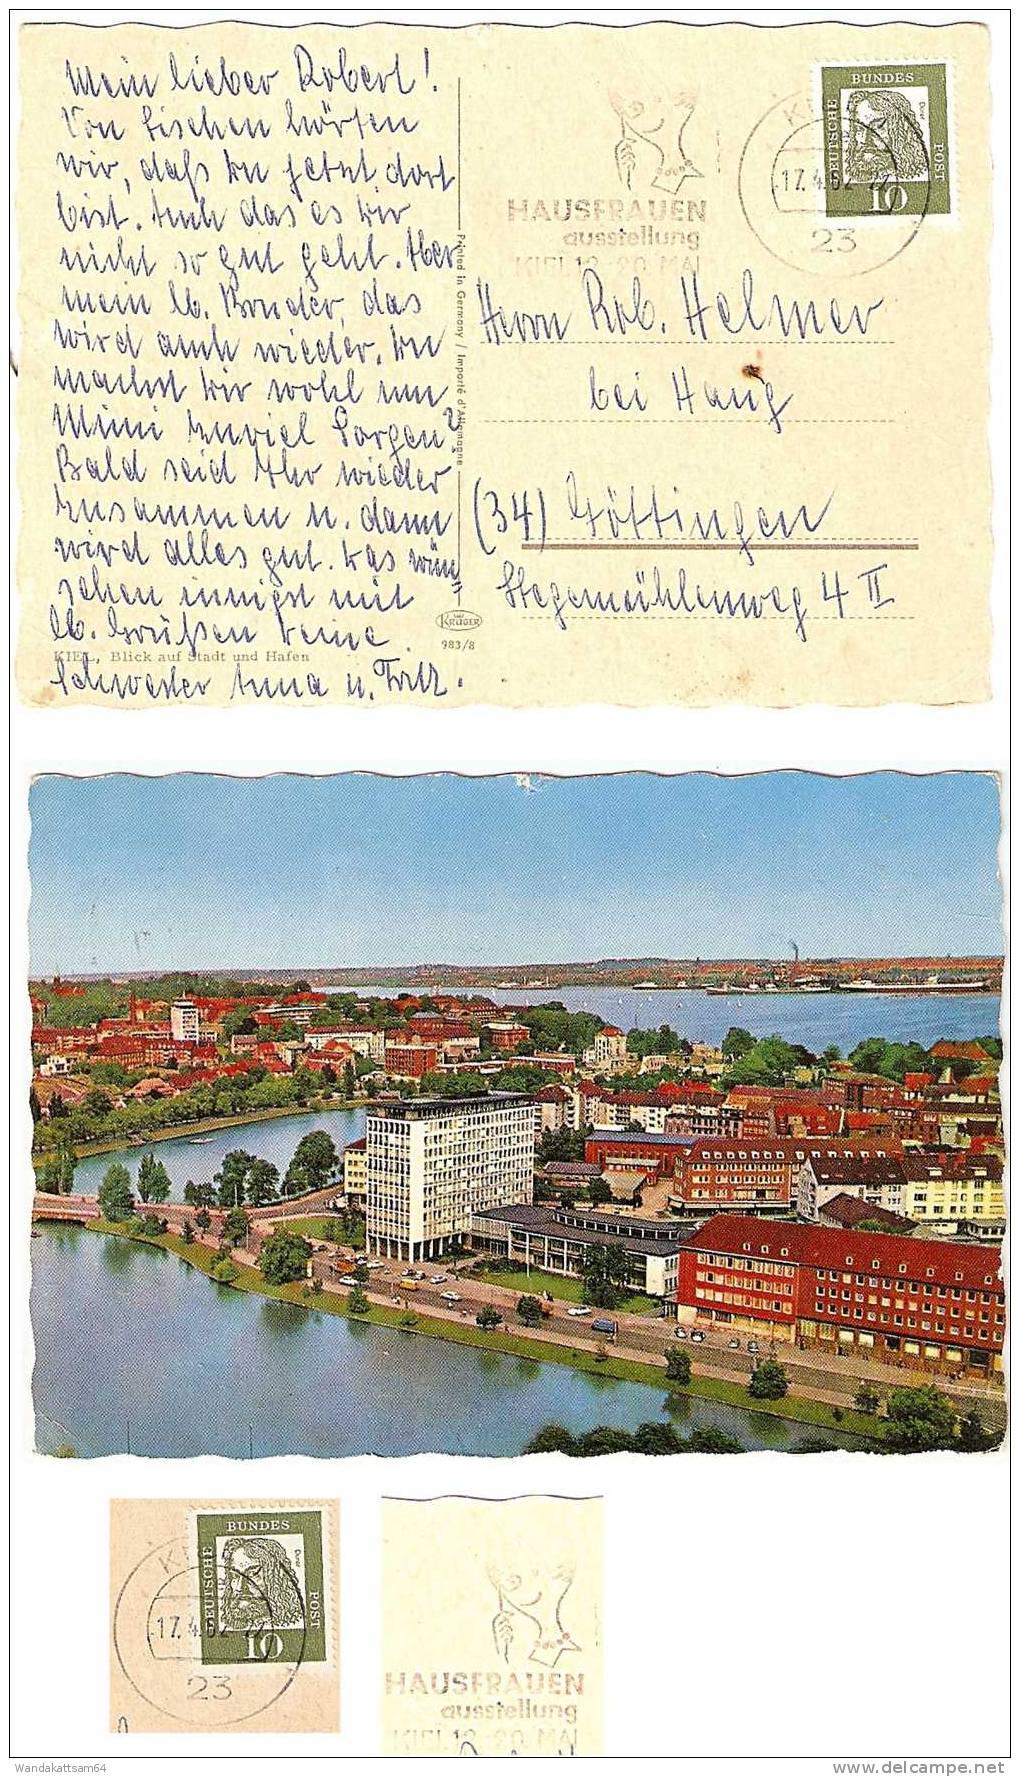 AK 9838 KIEL, Blick Auf Stadt Und Hafen 17. 4. 62--22 23 KIEL 1 Nach Göttingen Mit 1 X 15 Pf DEUTSCHE BUNDESPOST - Kiel